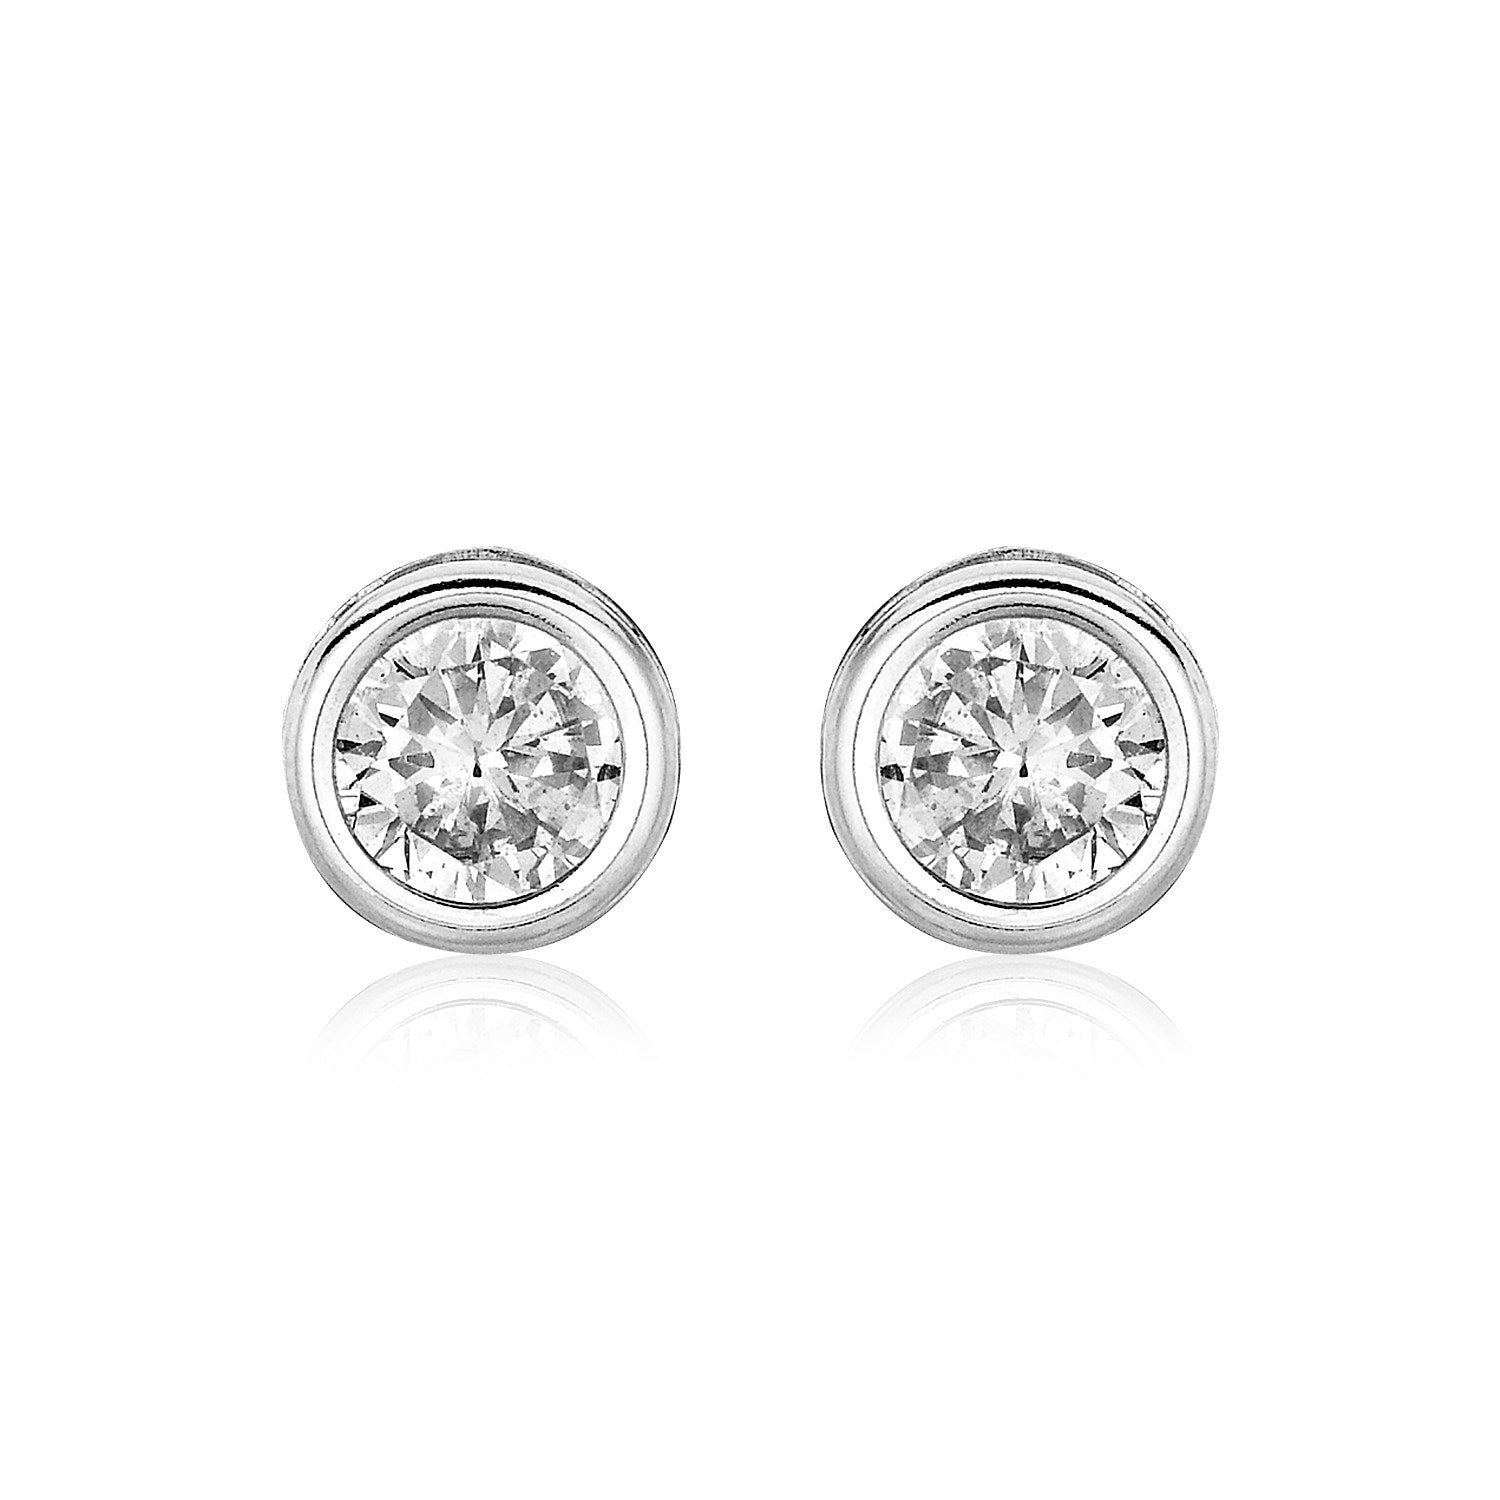 Sterling Silver Round Bezel Set Cubic Zirconia Earrings